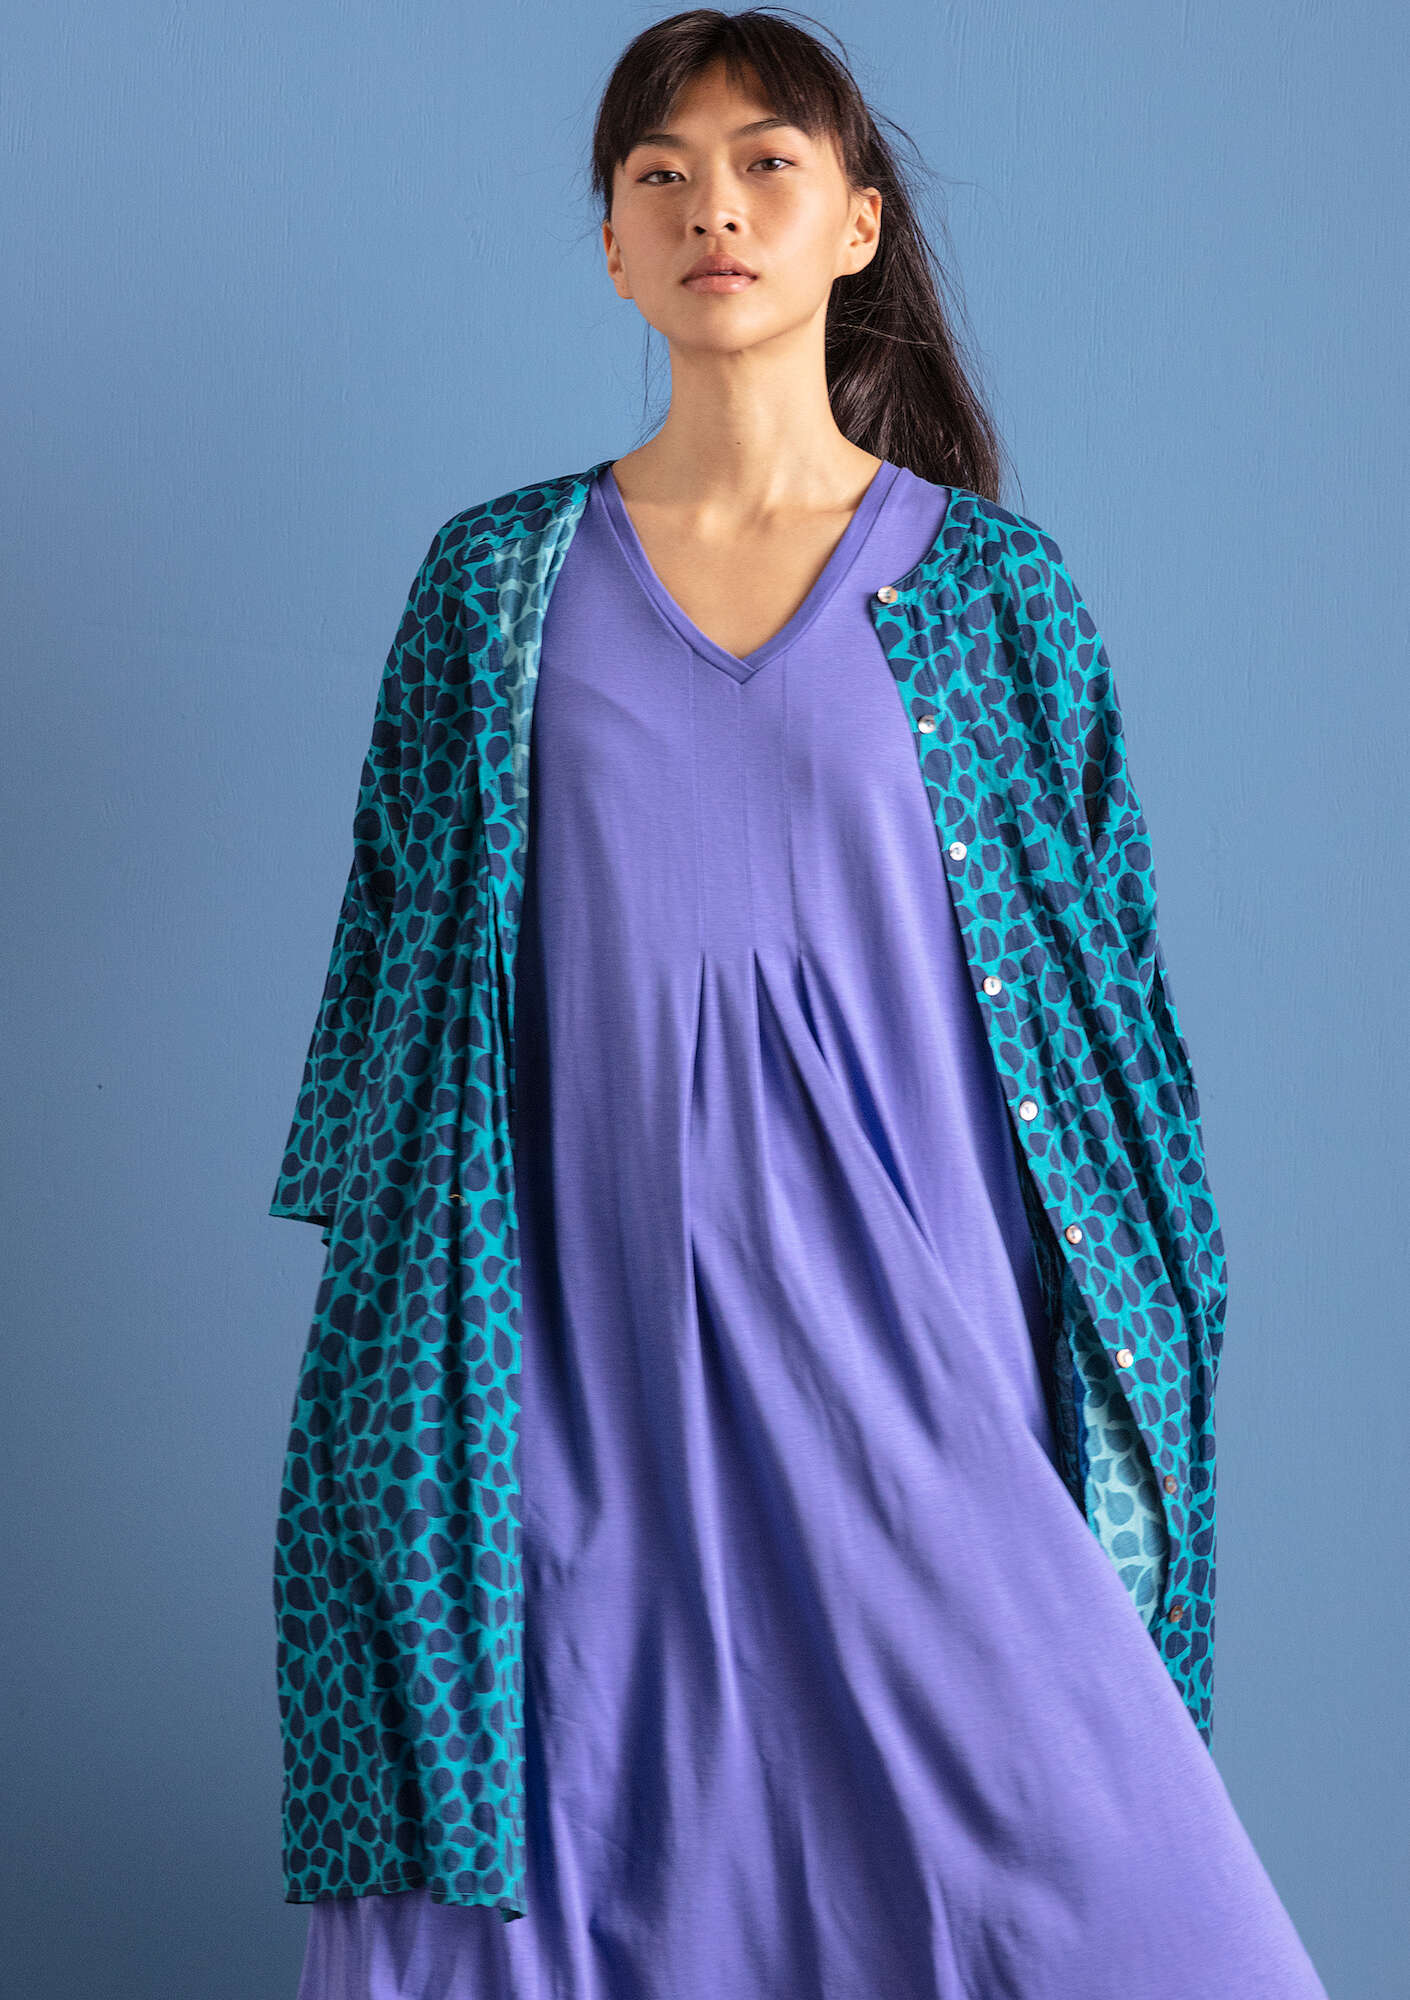 Vevd kjole «Serafina» i økologisk bomull turkis/mønstret thumbnail